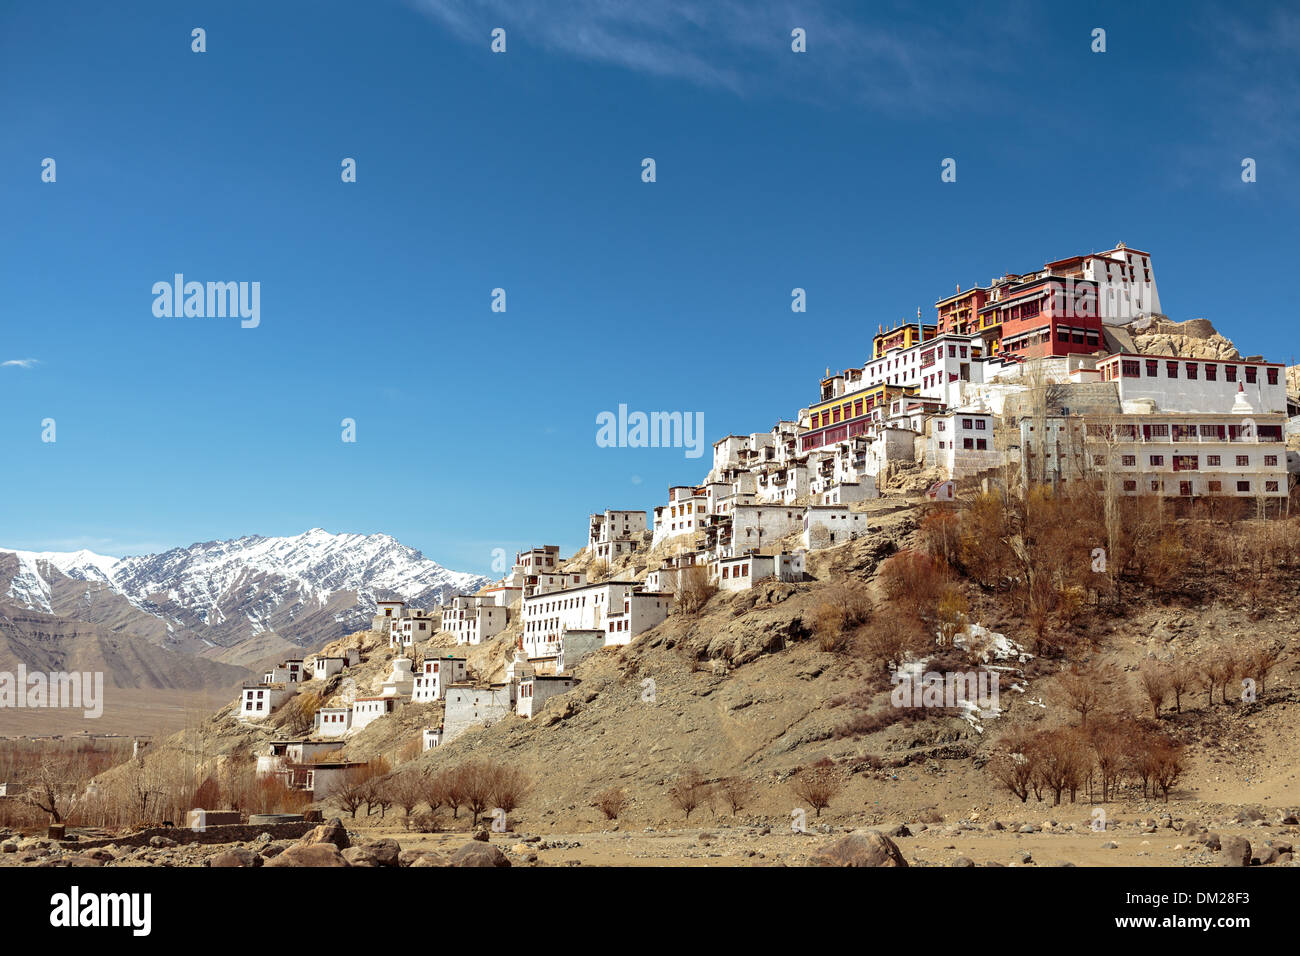 Thikse Kloster oben auf einem Felsvorsprung in der Indus Tal von Ladakh in Nordindien.  Dies ist ein tibetischer Stil buddhistischer Gompa. Stockfoto